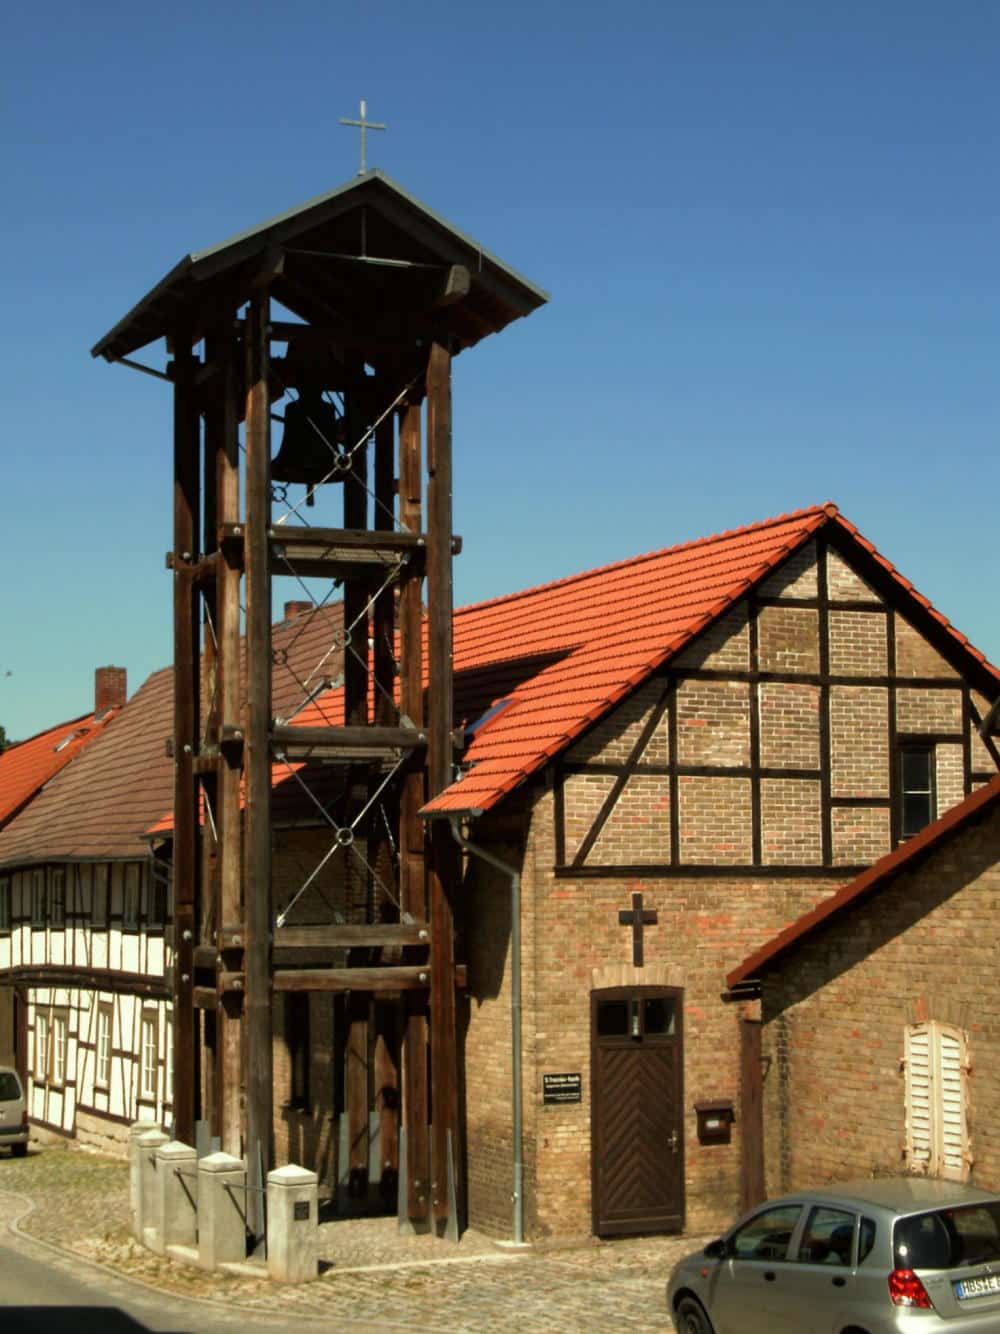 Langensteins katholische Kapelle mit evangelischem Glockenturm im Jahr 2010. Foto: https://commons.wikimedia.org/wiki/File:Langenstein_Kapelle_Franziskus.jpg 